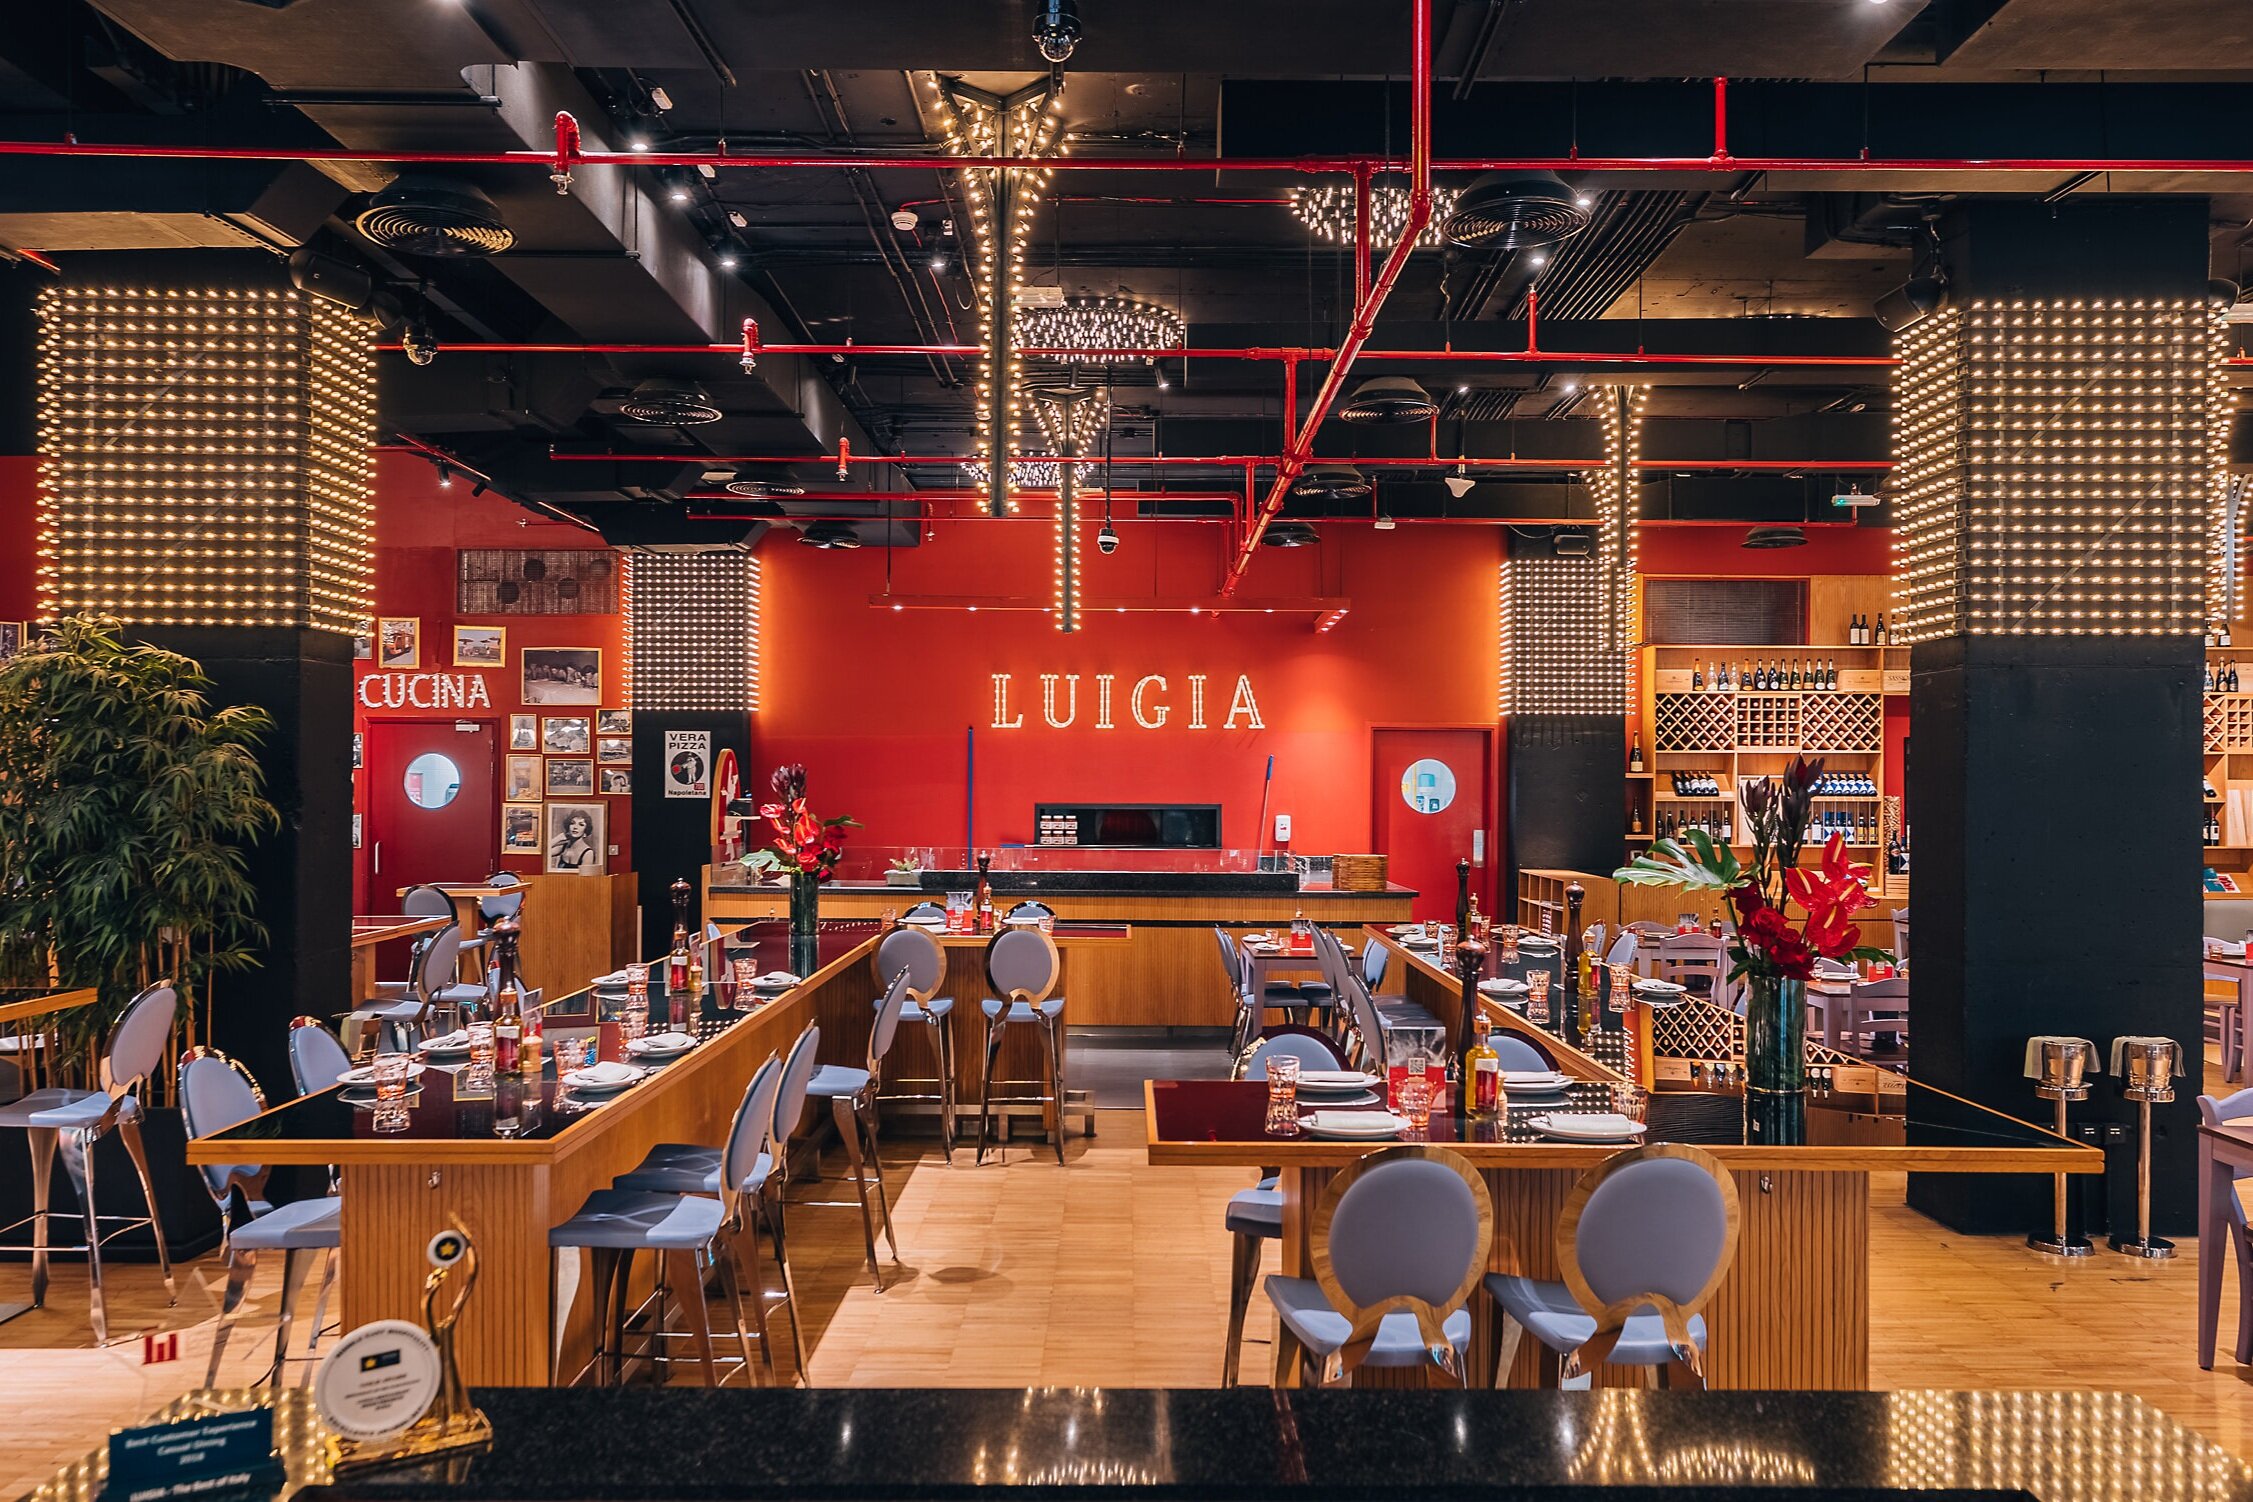 Luigia The Best Of Italy - Lucia Restaurant Dubai